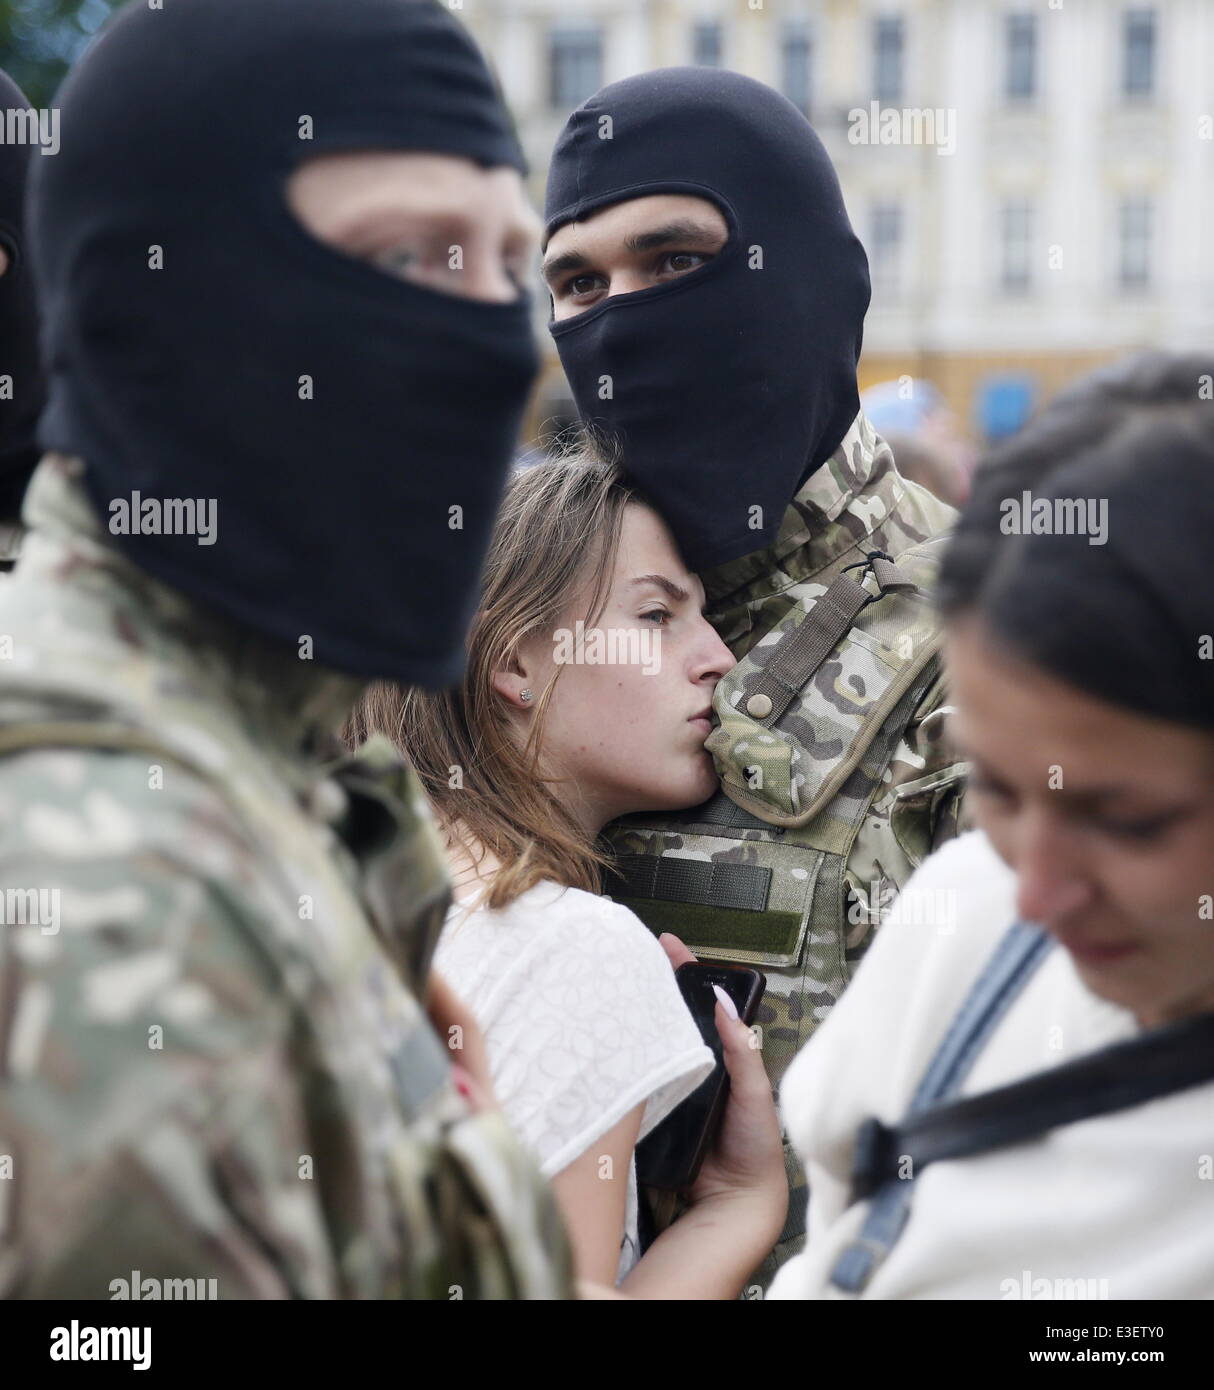 kiev-ucrania-el-23-de-junio-de-2014-masked-voluntarios-que-se-han-sumado-el-batallon-del-ejercito-del-gobierno-ucraniano-azov-para-tomar-parte-en-la-operacion-militar-en-donetsk-y-lugansk-regiones-abrazar-a-sus-novias-antes-o-despues-de-tomar-el-juramento-de-lealtad-en-el-centr-e3ety0.jpg